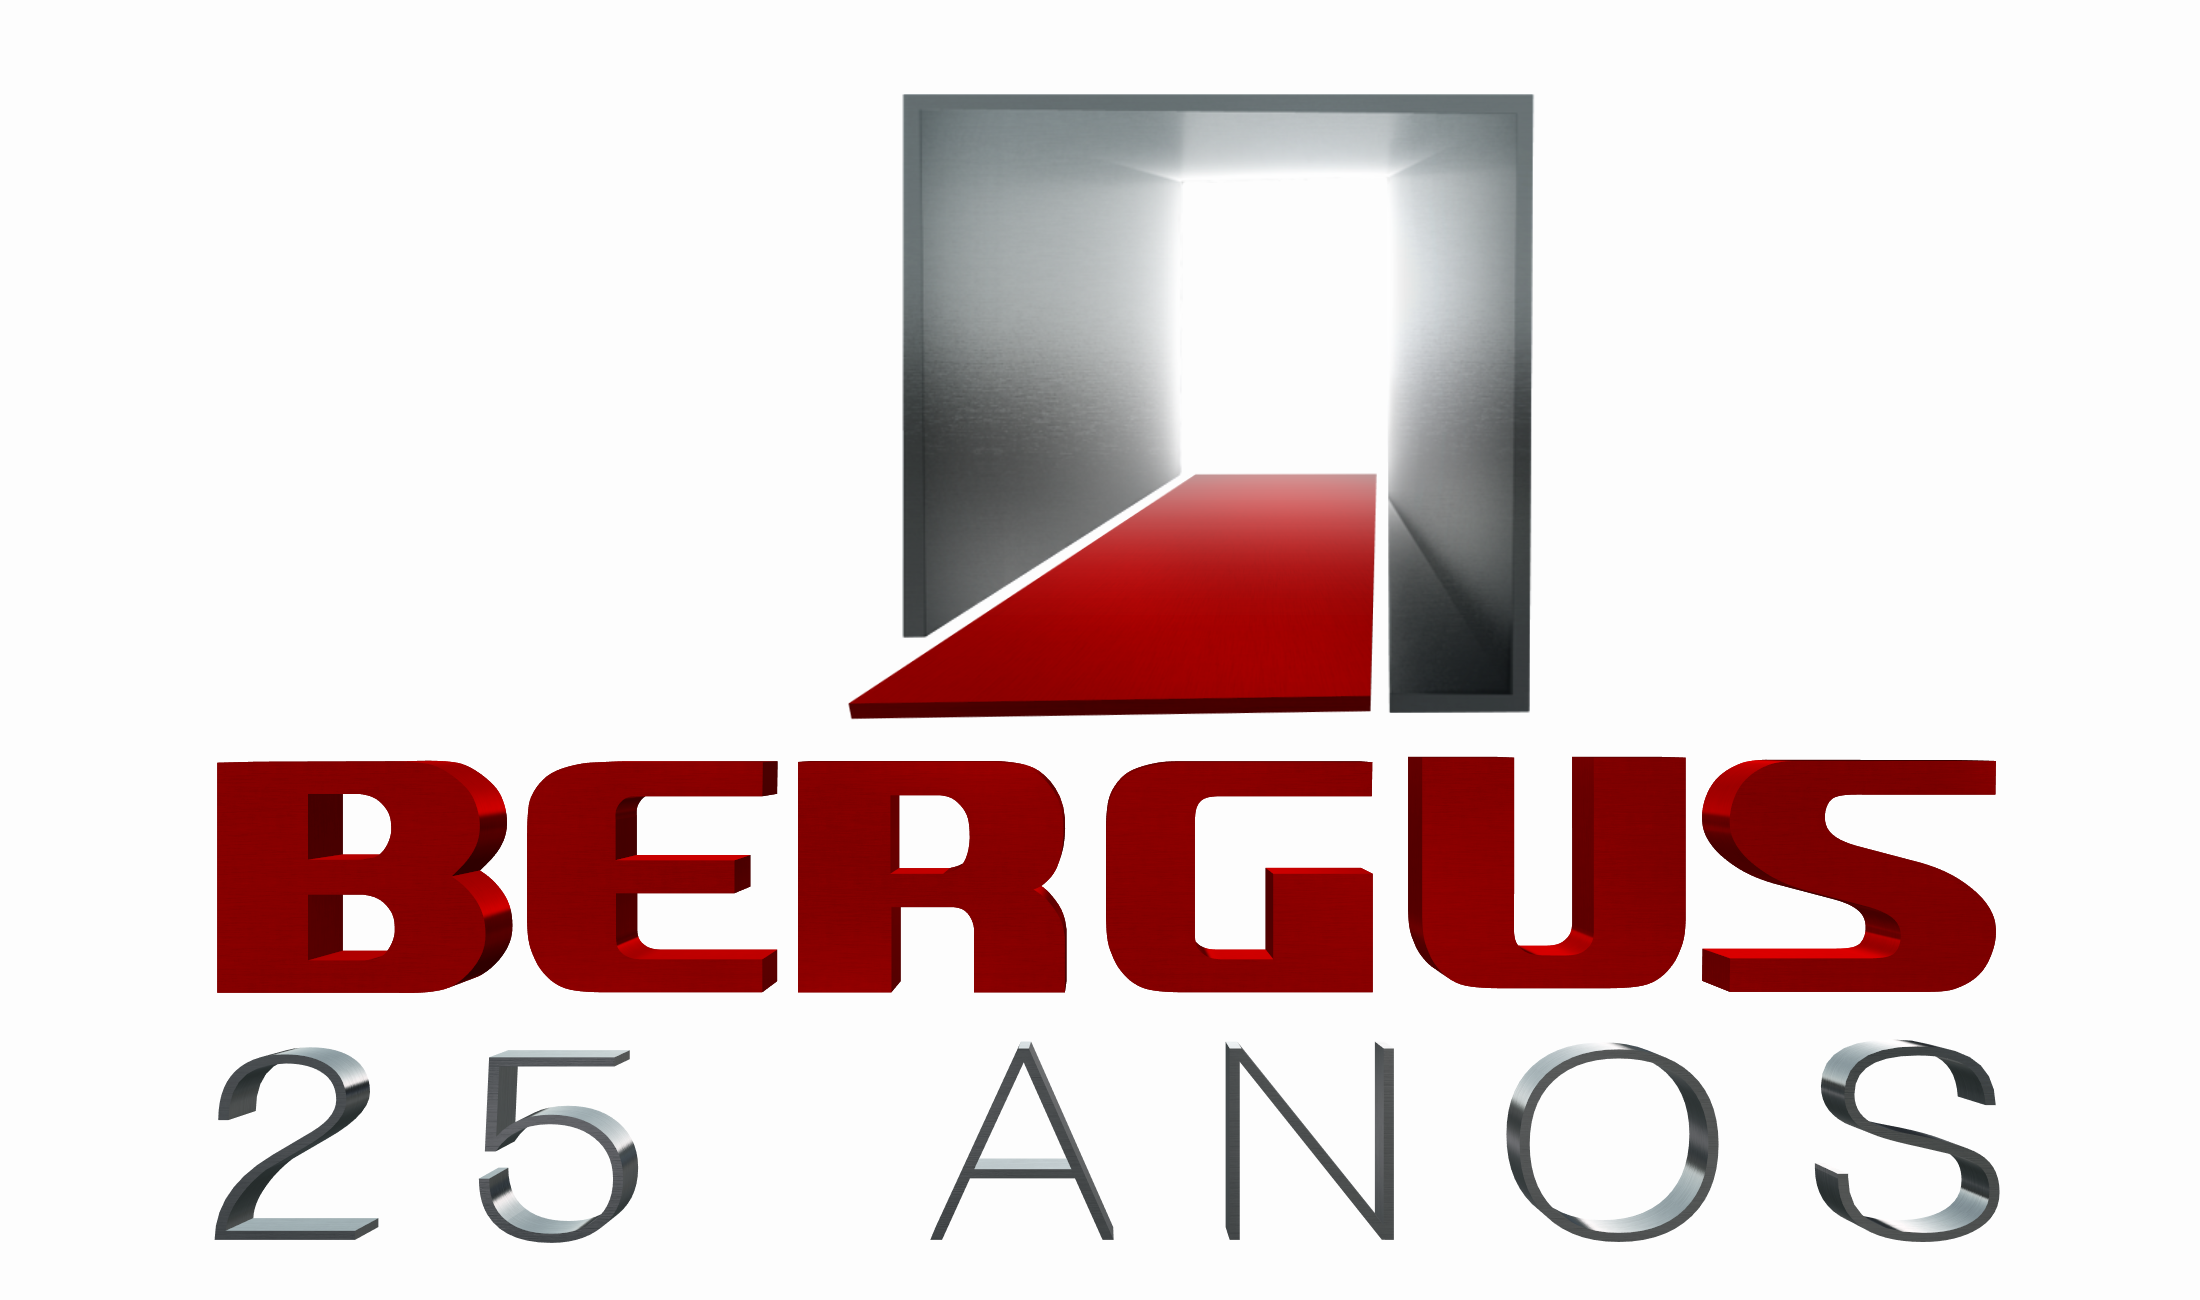 Bergus – Microfranquias